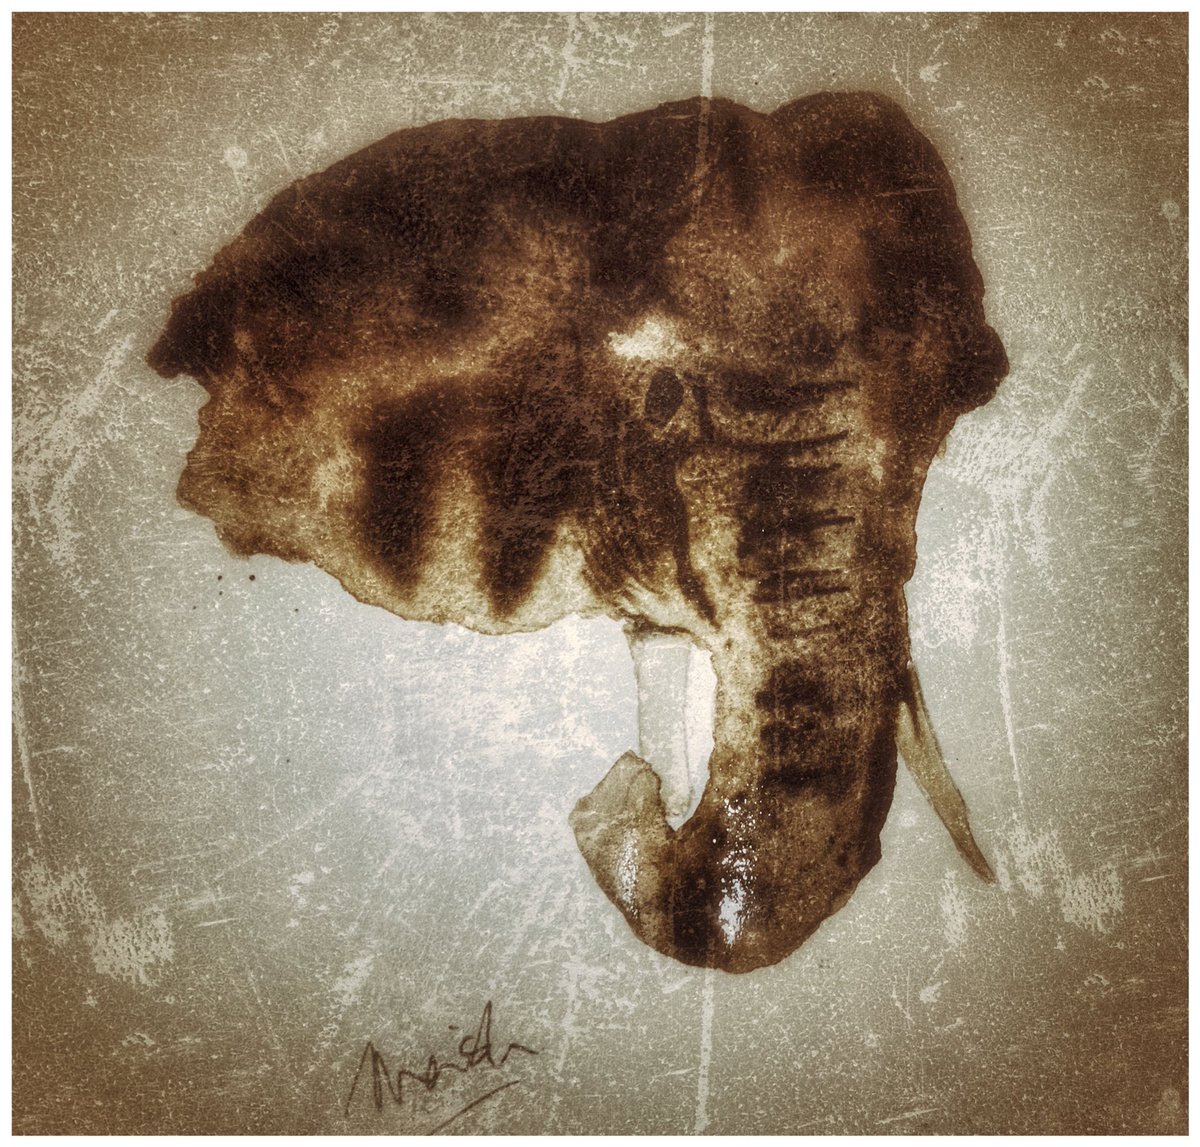 #watercolor #digital #art #watercolordigital #painting #ElephantDay #artist #hobby #wildlife